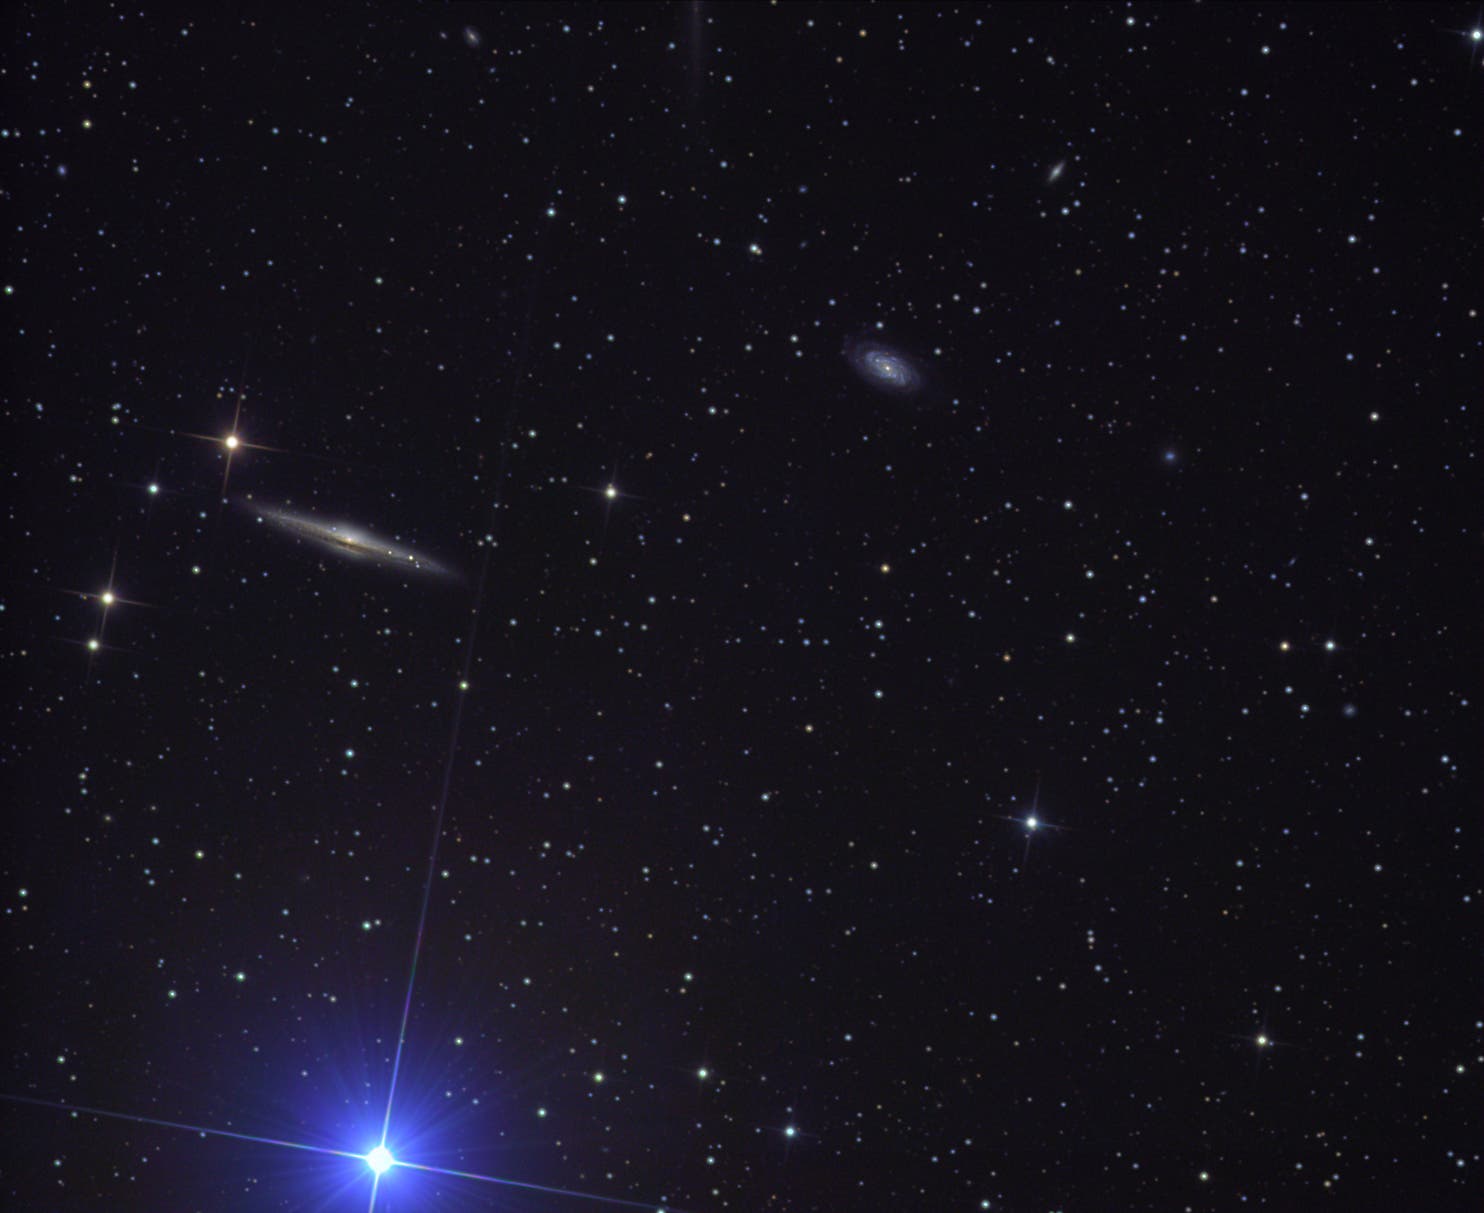 NGC 5746